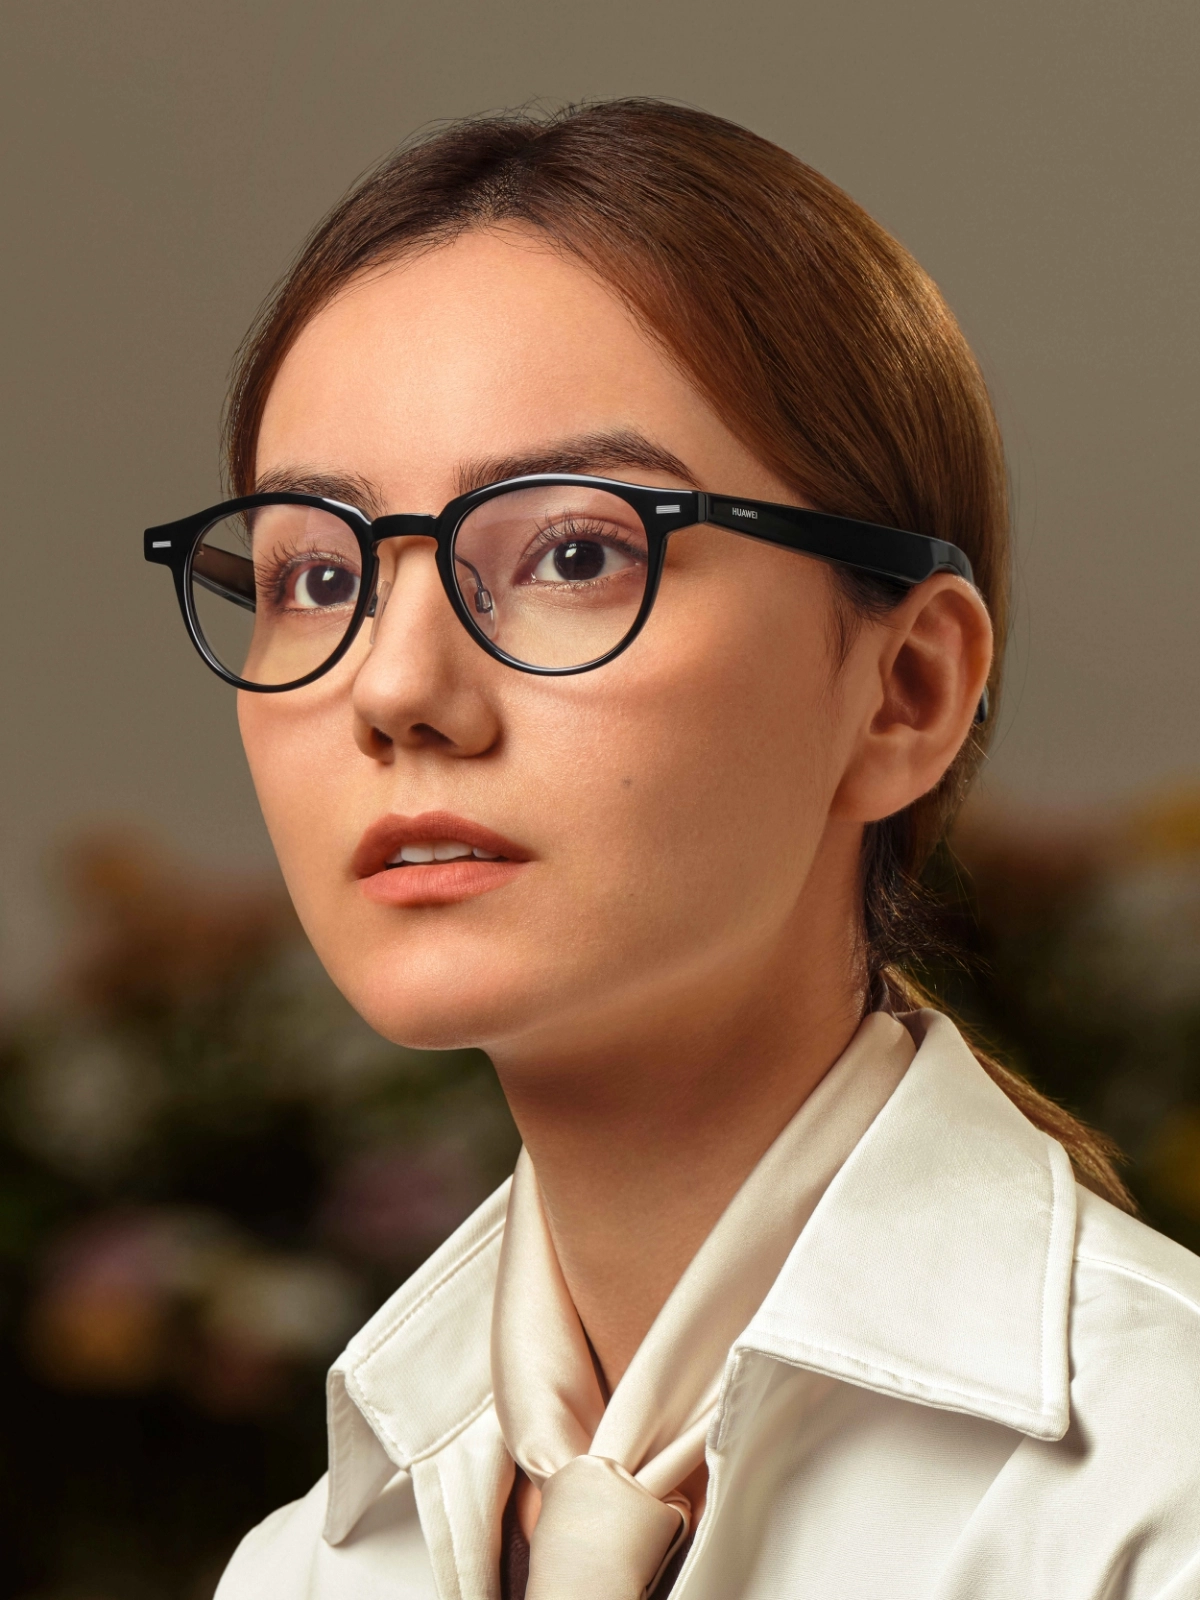 Huawei Smart Glass inteligentne okulary z systemem HarmonyOS